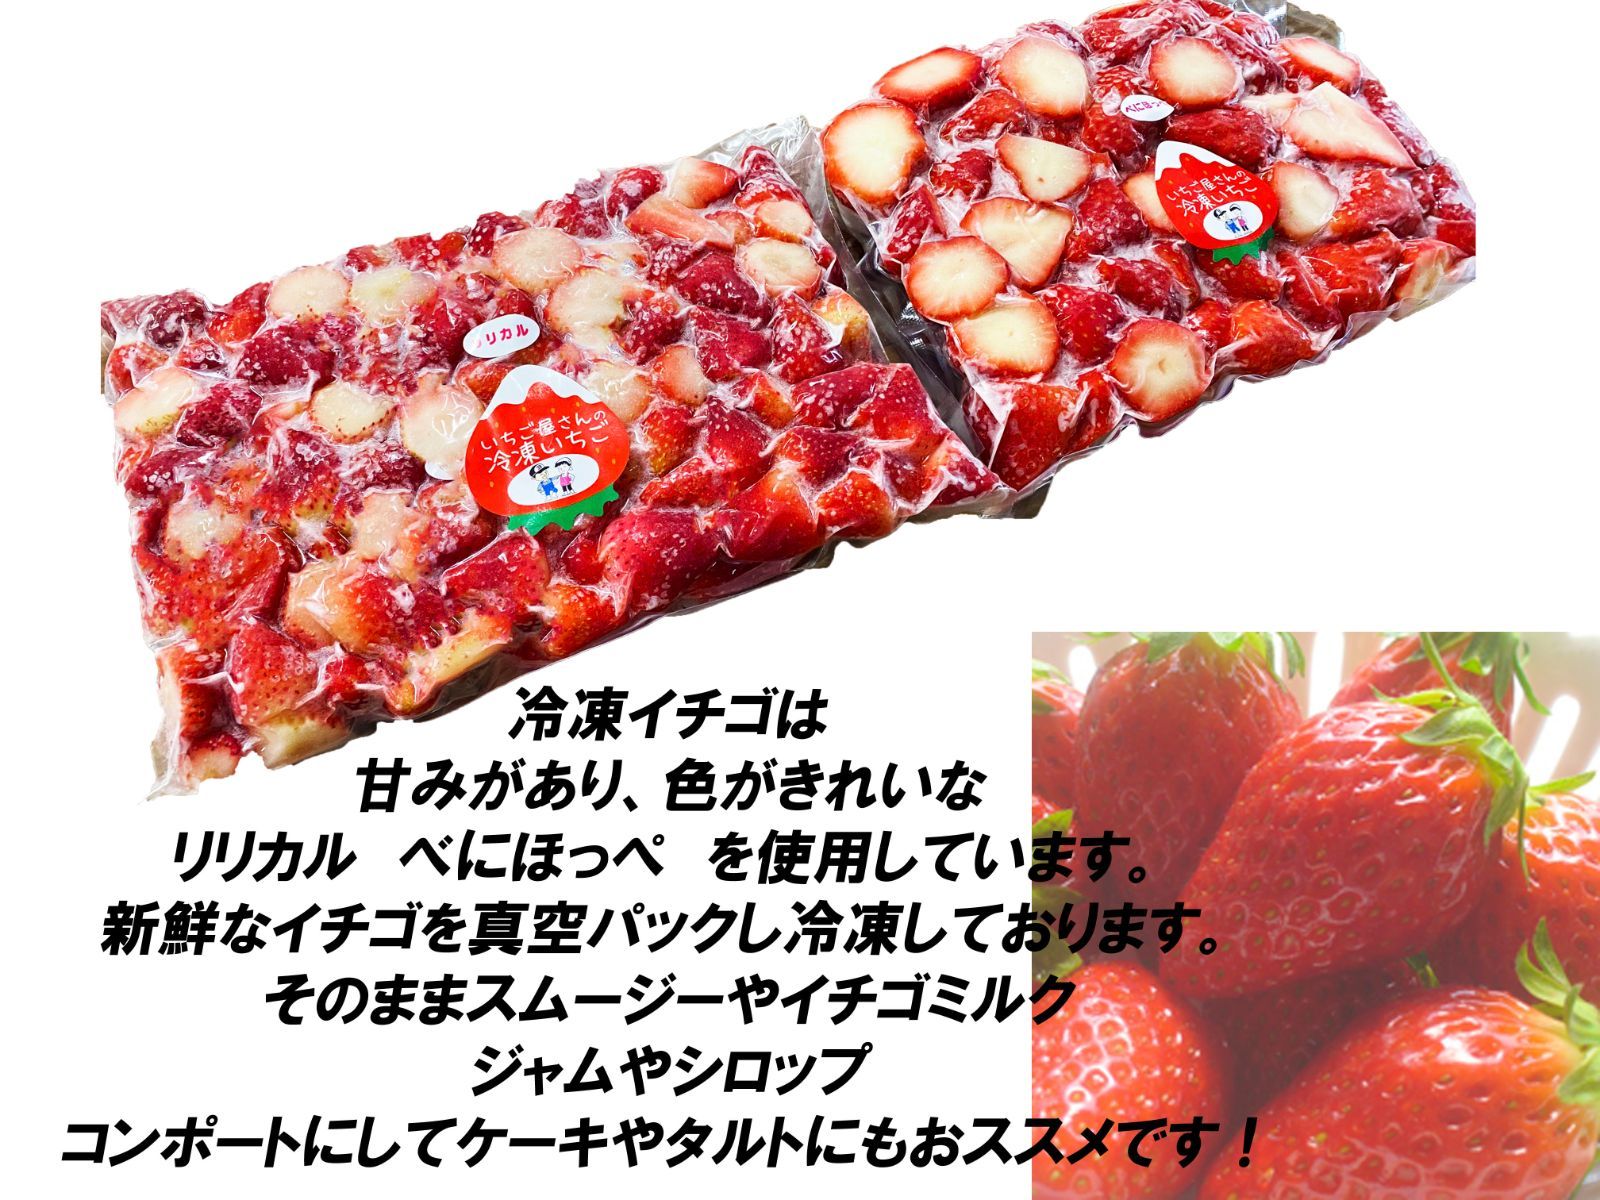 保障できる 青森県産 冷凍 夏イチゴ 冷凍イチゴ スムージー かき氷 1kg